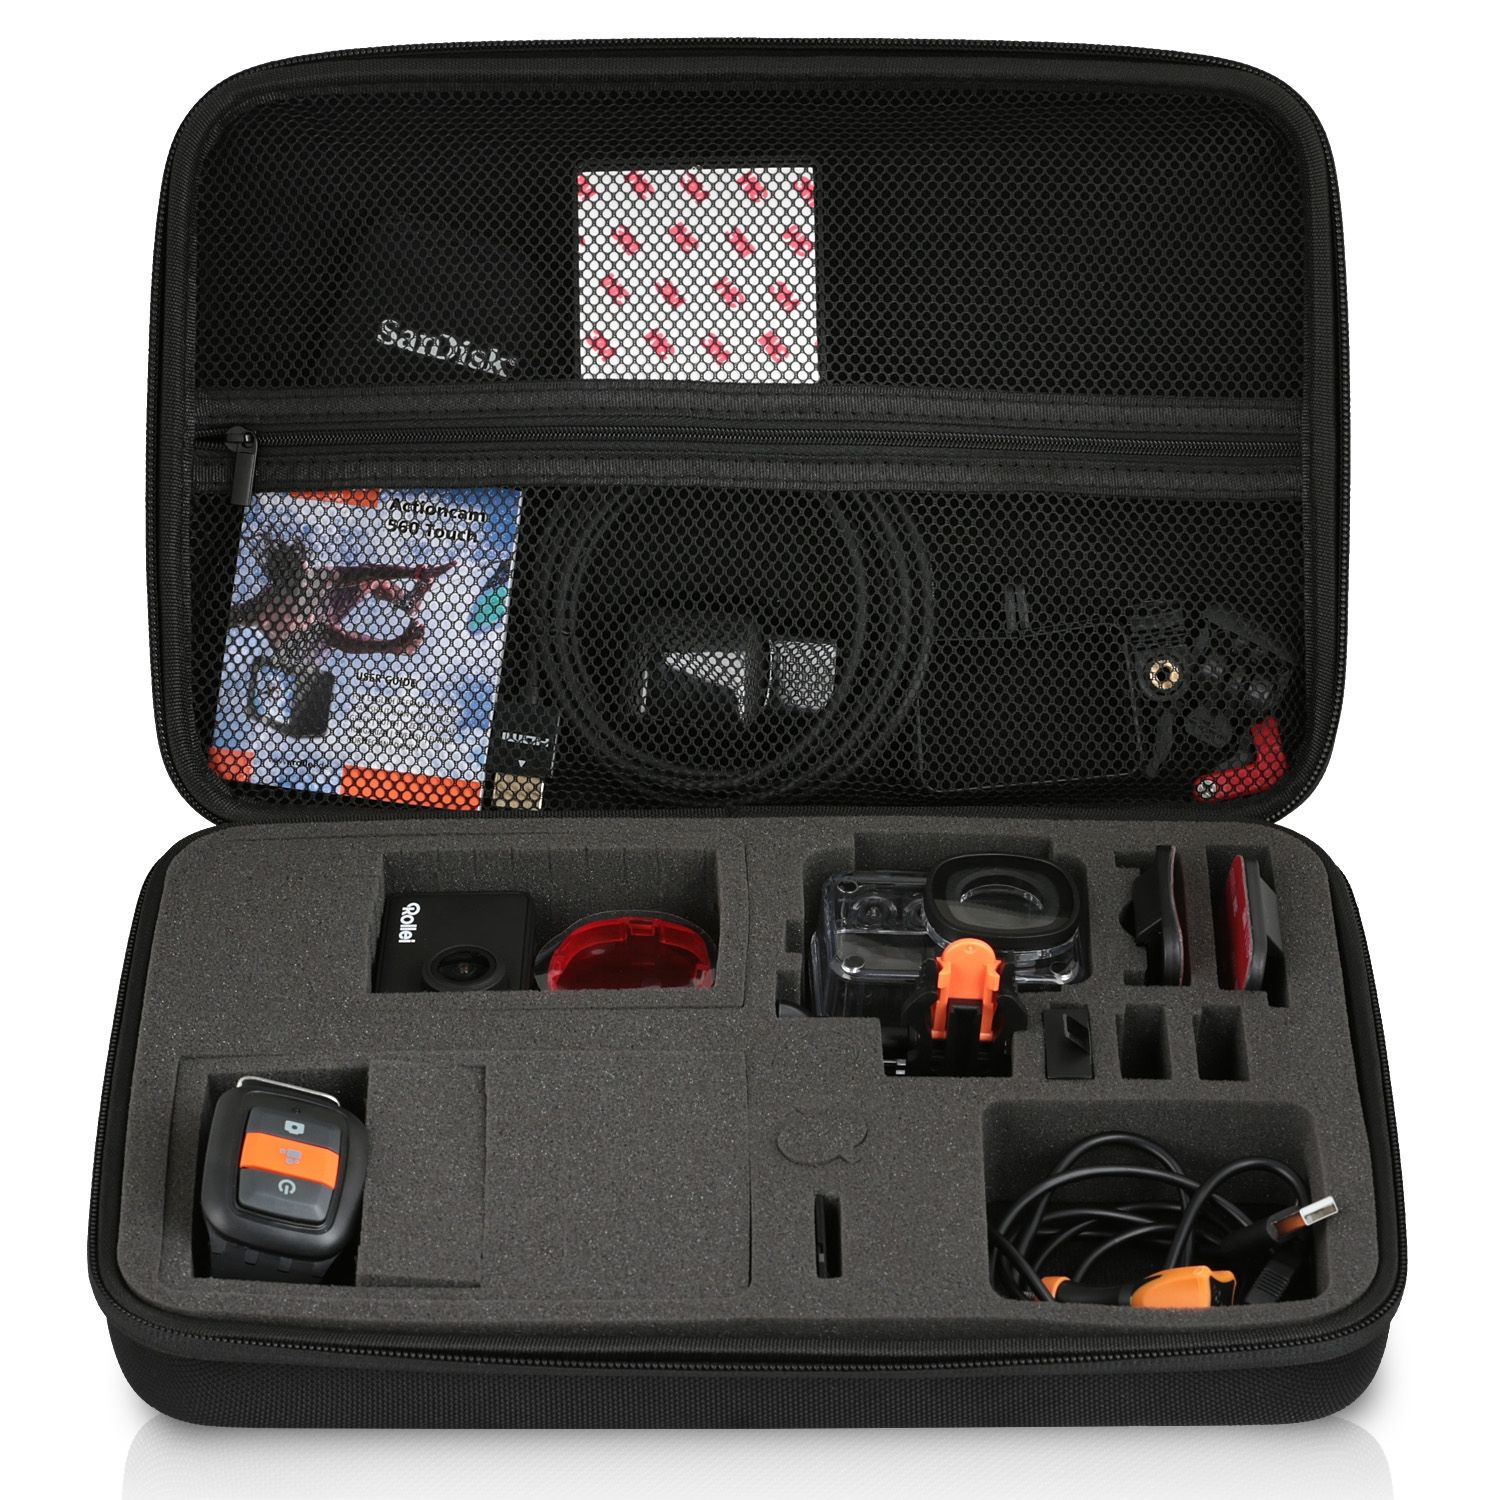 WICKED CHILI GOP Case / Rollei 510 für 540 Koffer mit schwarz / Schutztasche, / 560 Kamera / 425 530 550 Tasche kompatibel / Actioncam